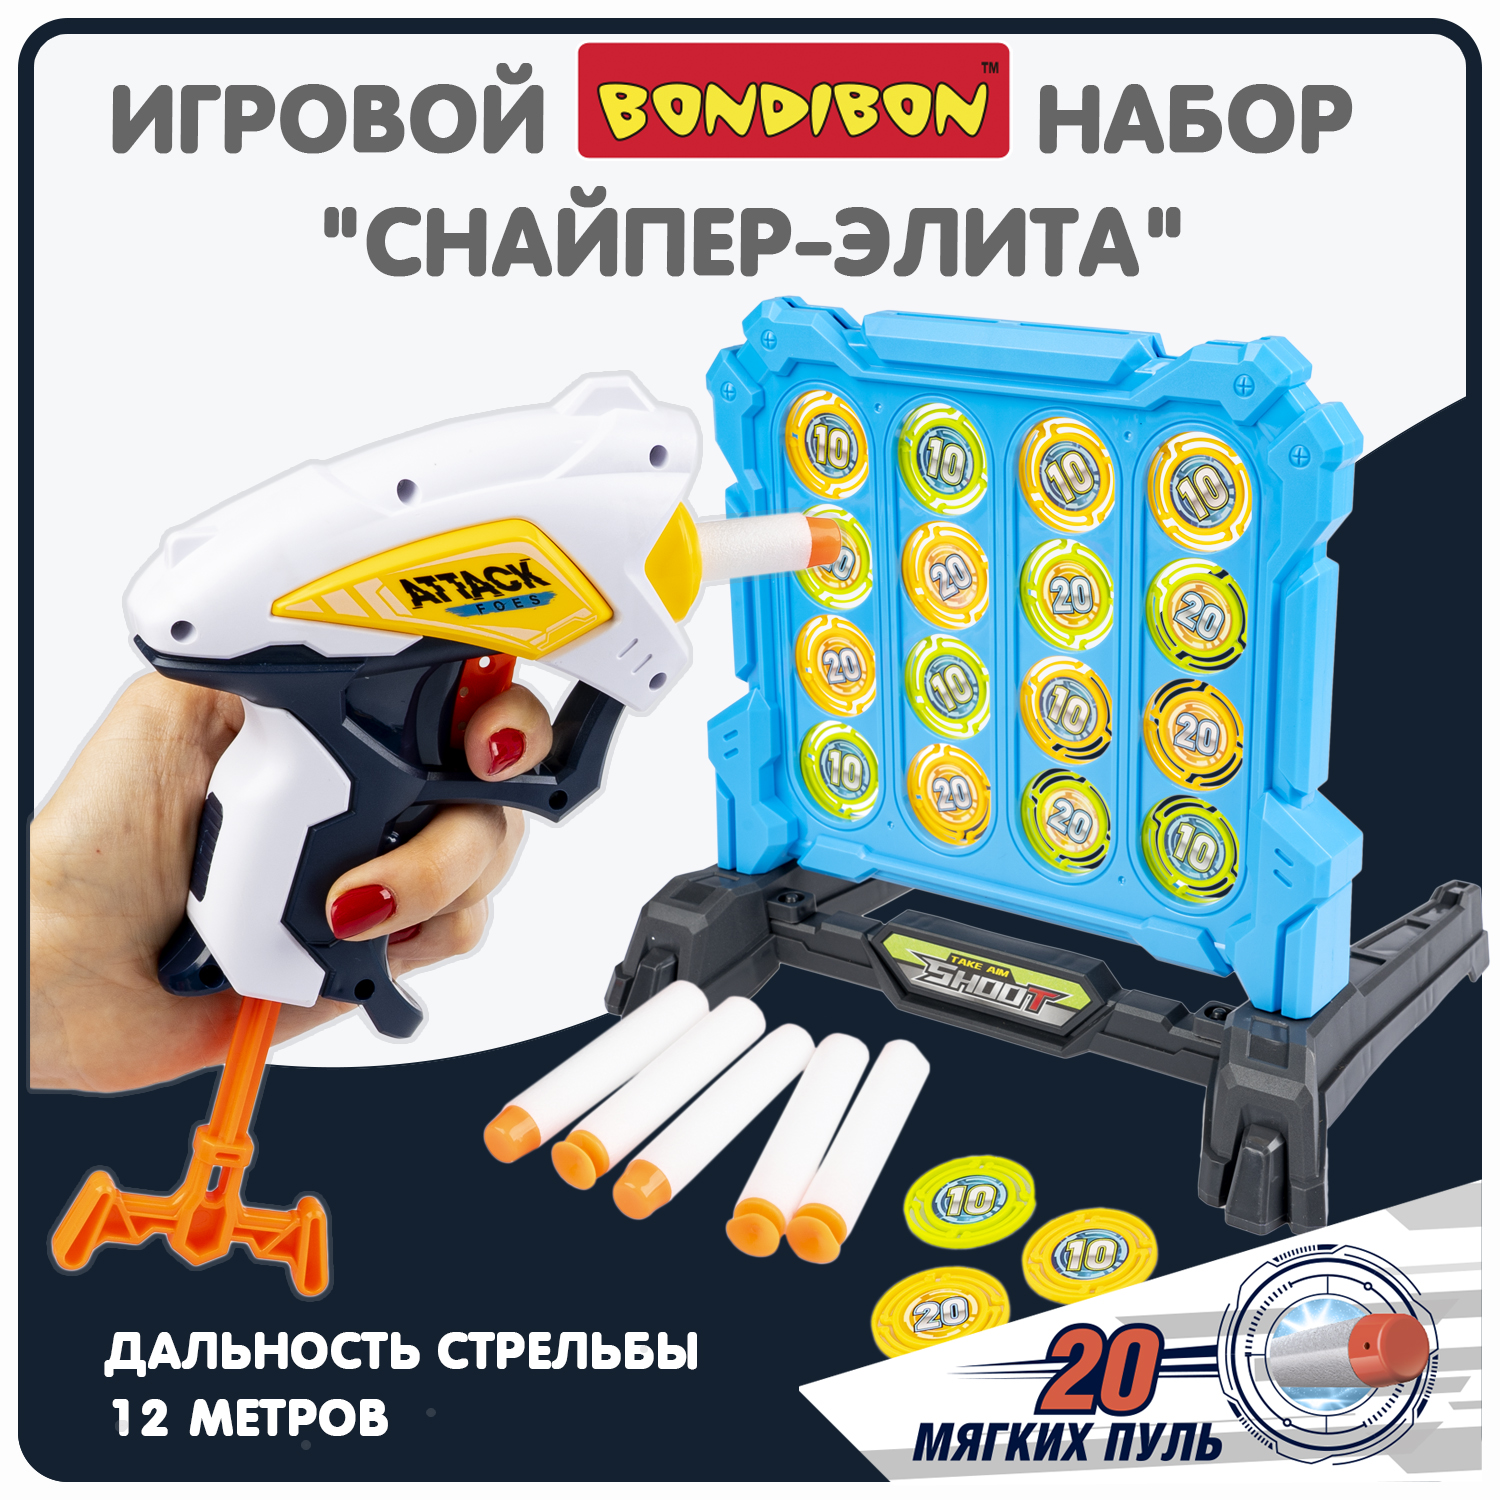 Набор игровой Bondibon CНАЙПЕР-элита пистолет, мишень, мягкие пули / ВВ6064(игрушка) laserx набор игровой микро 2 бластерв 2 мишени